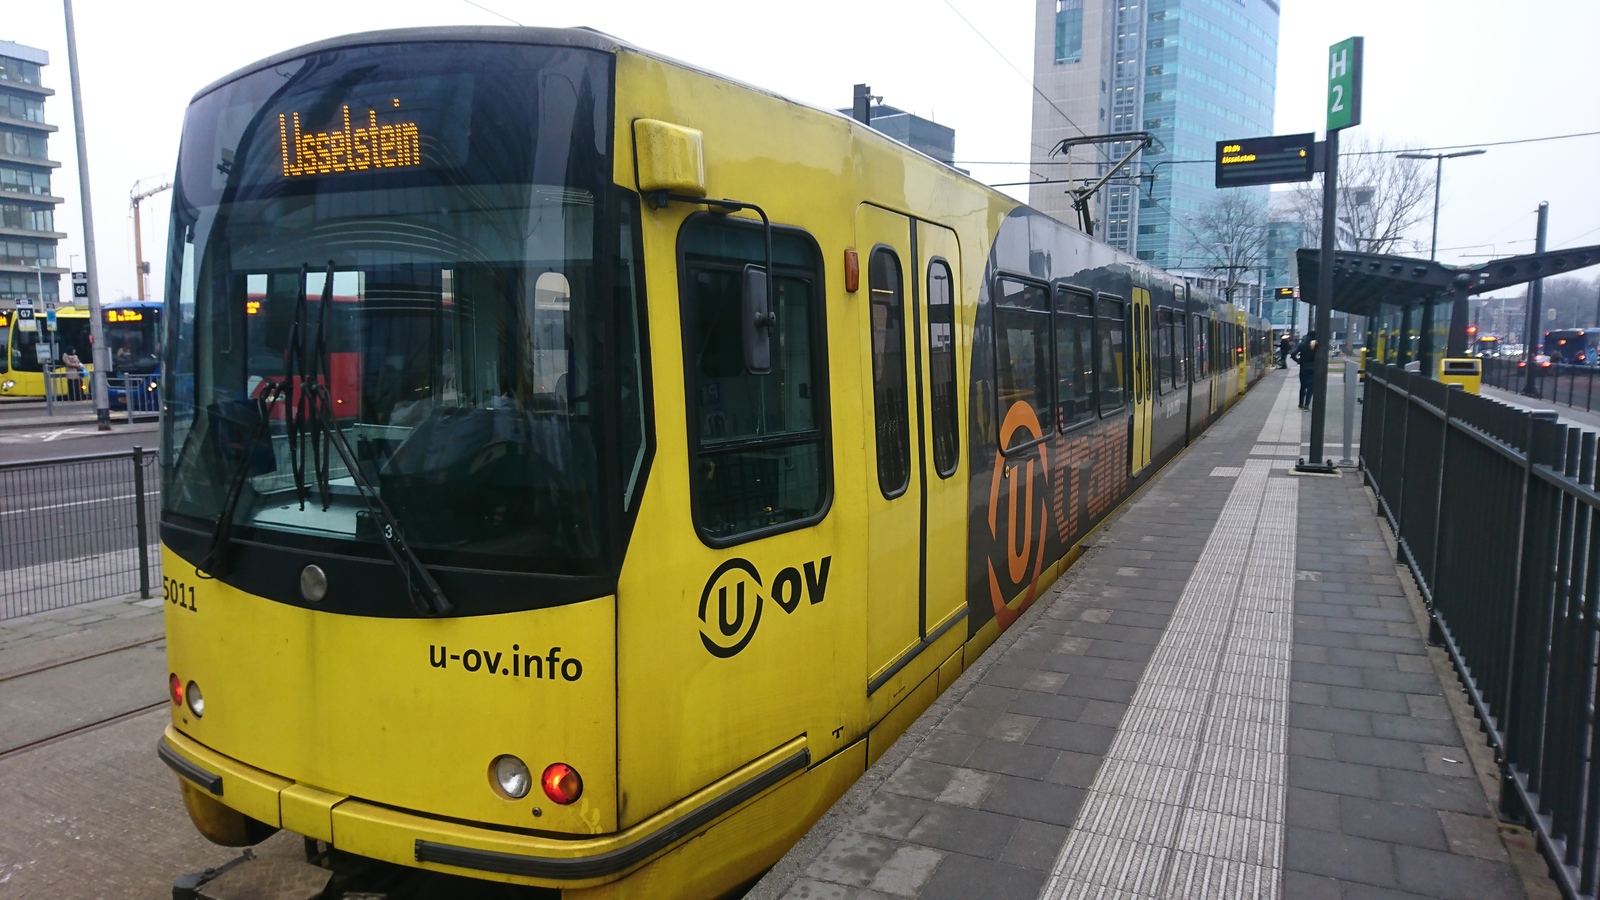 Foto van QBZ SIG-tram 5011